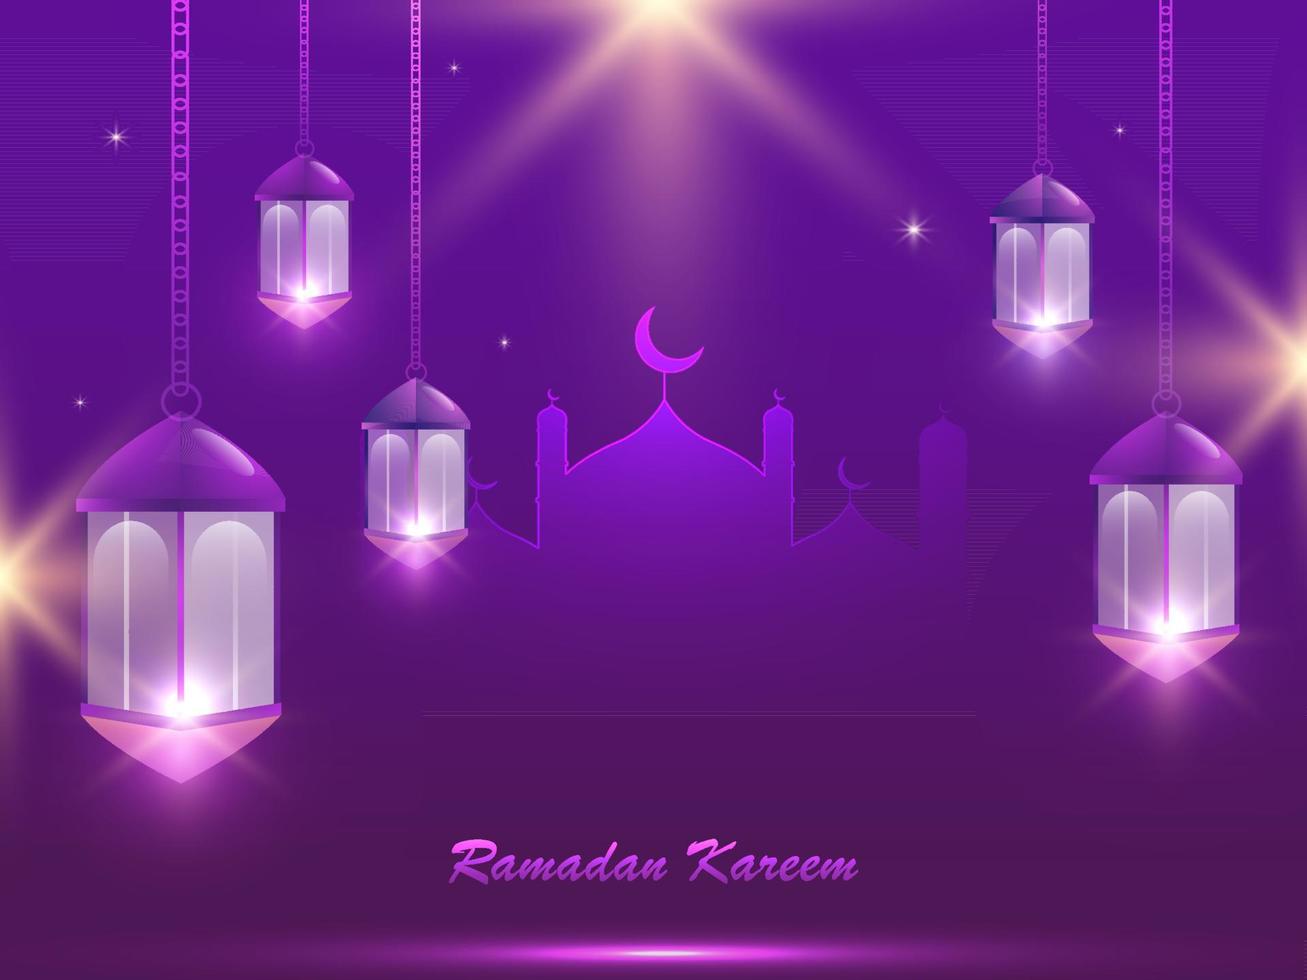 Ramadan kareem Poster Design mit Moschee und hängend beleuchtet Laternen auf Licht bewirken lila Hintergrund. vektor